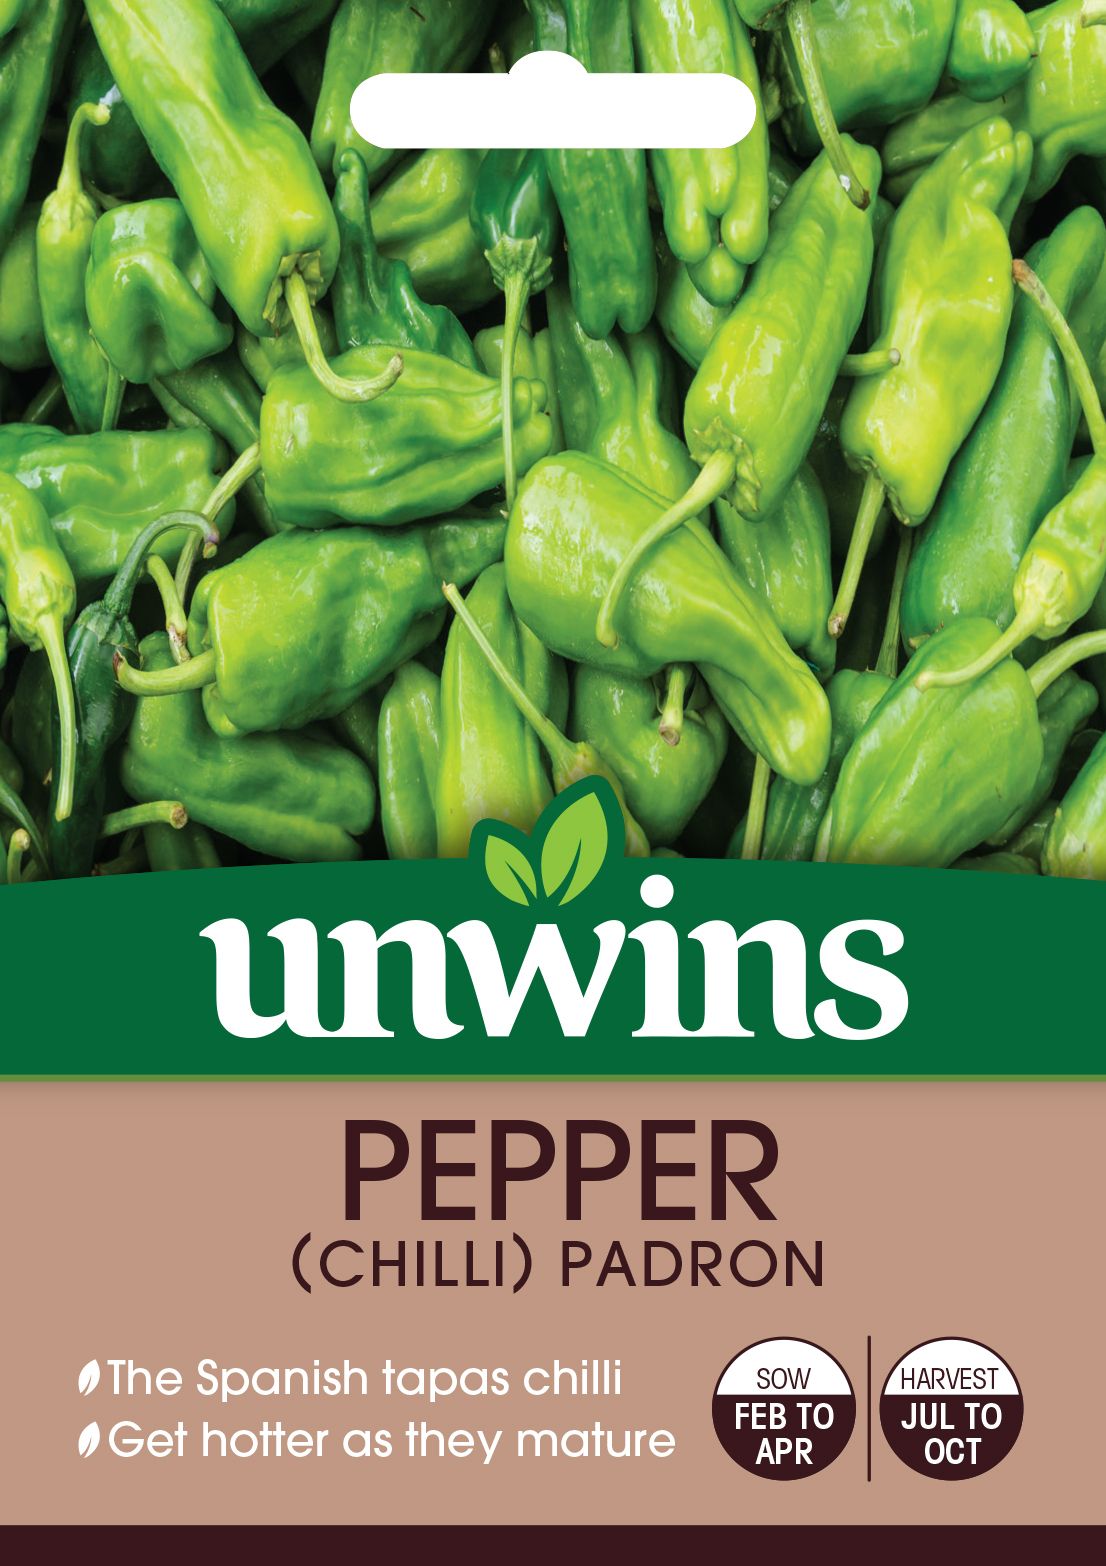 Pepper (chilli) Pardon